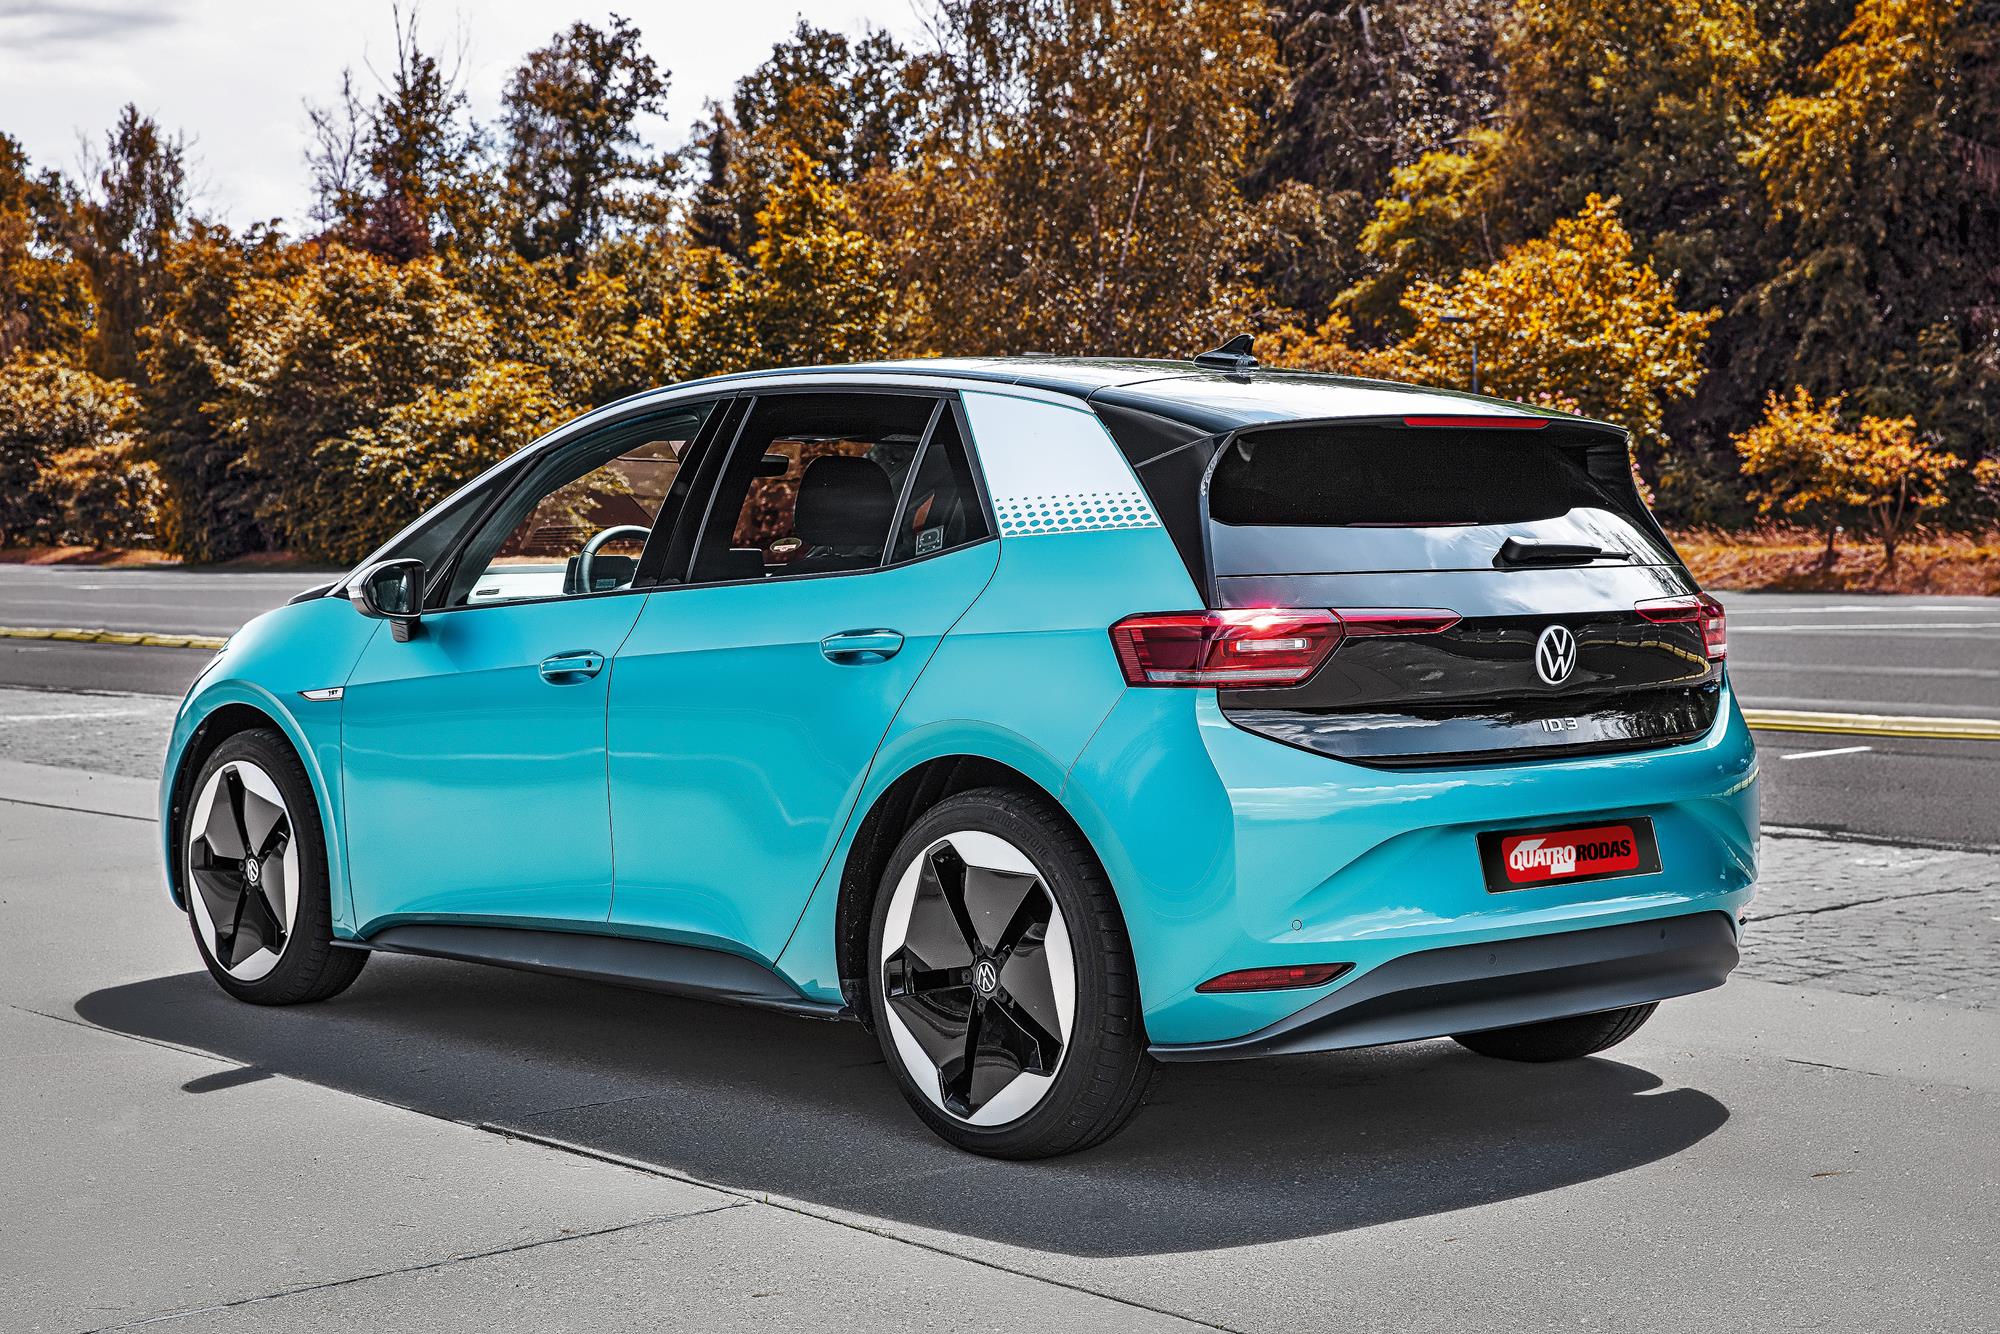 Impressões: Volkswagen ID.3 é como um Golf, só que do futuro | Quatro Rodas